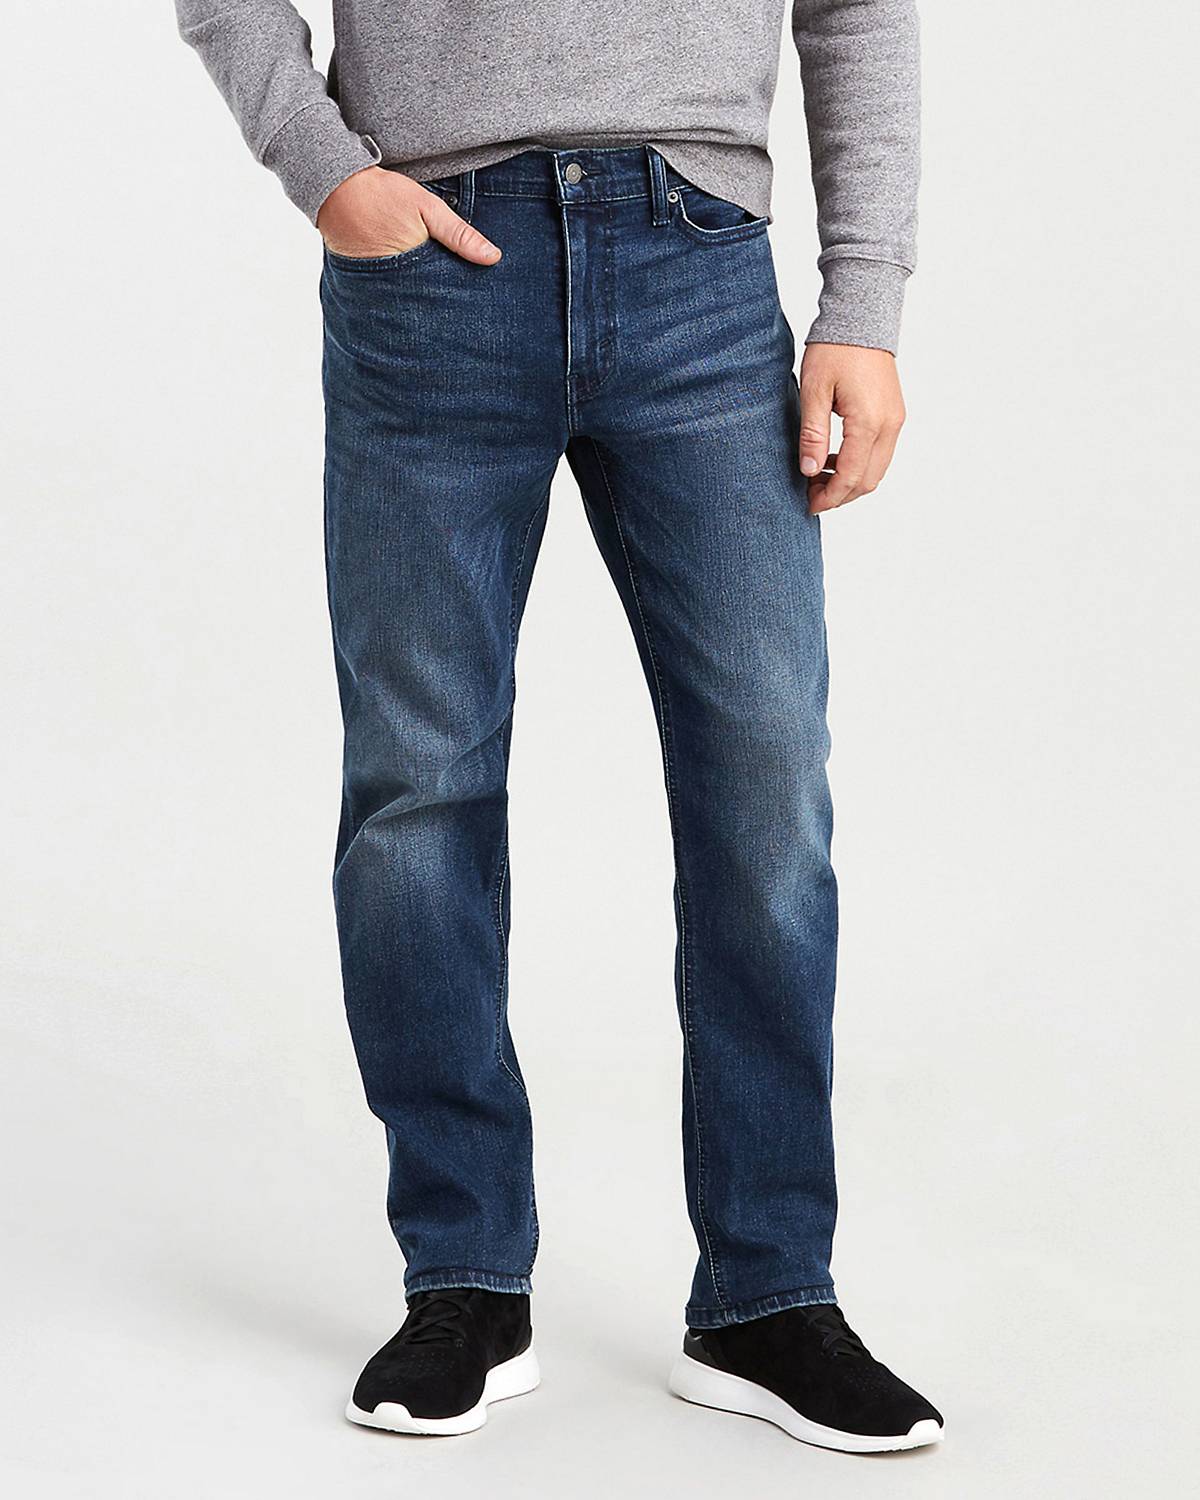 Model wearing denim jeans